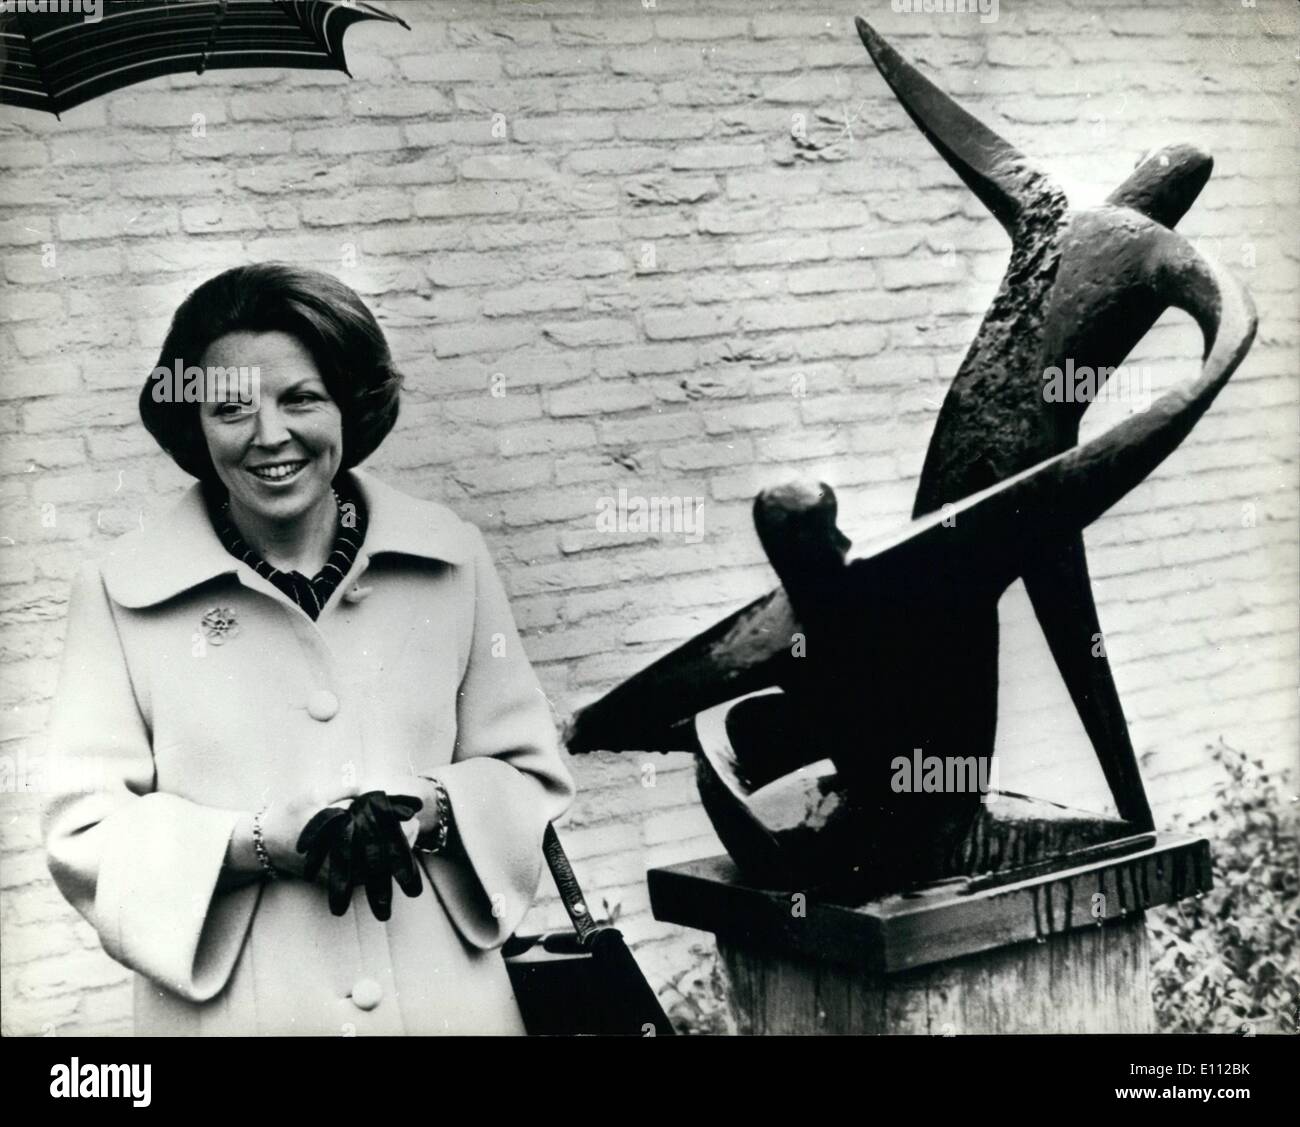 Mai 05, 1975 - La princesse néerlandaise dévoile sa propre : Sculpture, la Princesse Beatrix des Pays-Bas, a récemment dévoilé une sculpture, faite par elle-même, à la mémoire des victimes des camps de concentration. Photo montre : la princesse Beatrix avec ses sculptures qu'elle a dévoilé à Leiden en Hollande. Banque D'Images